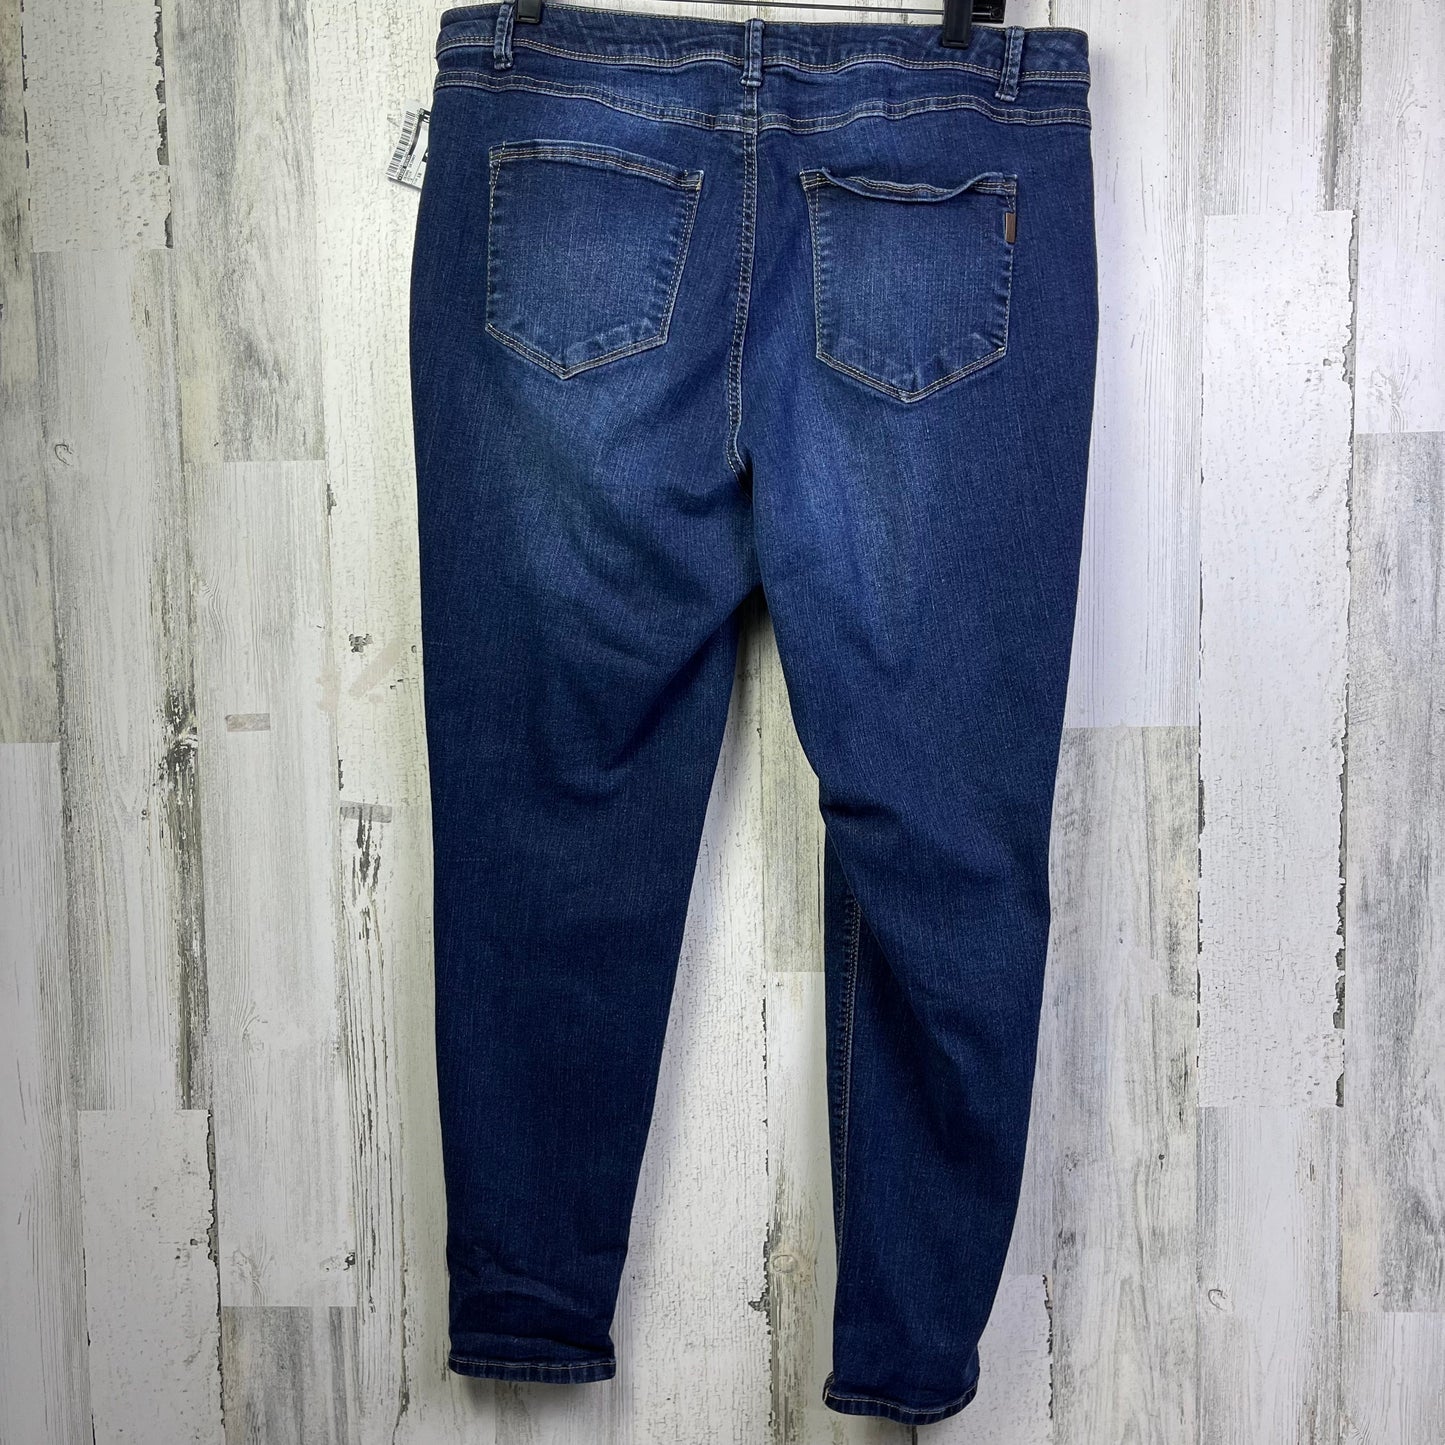 Jeans Skinny By 1822 Denim  Size: 18